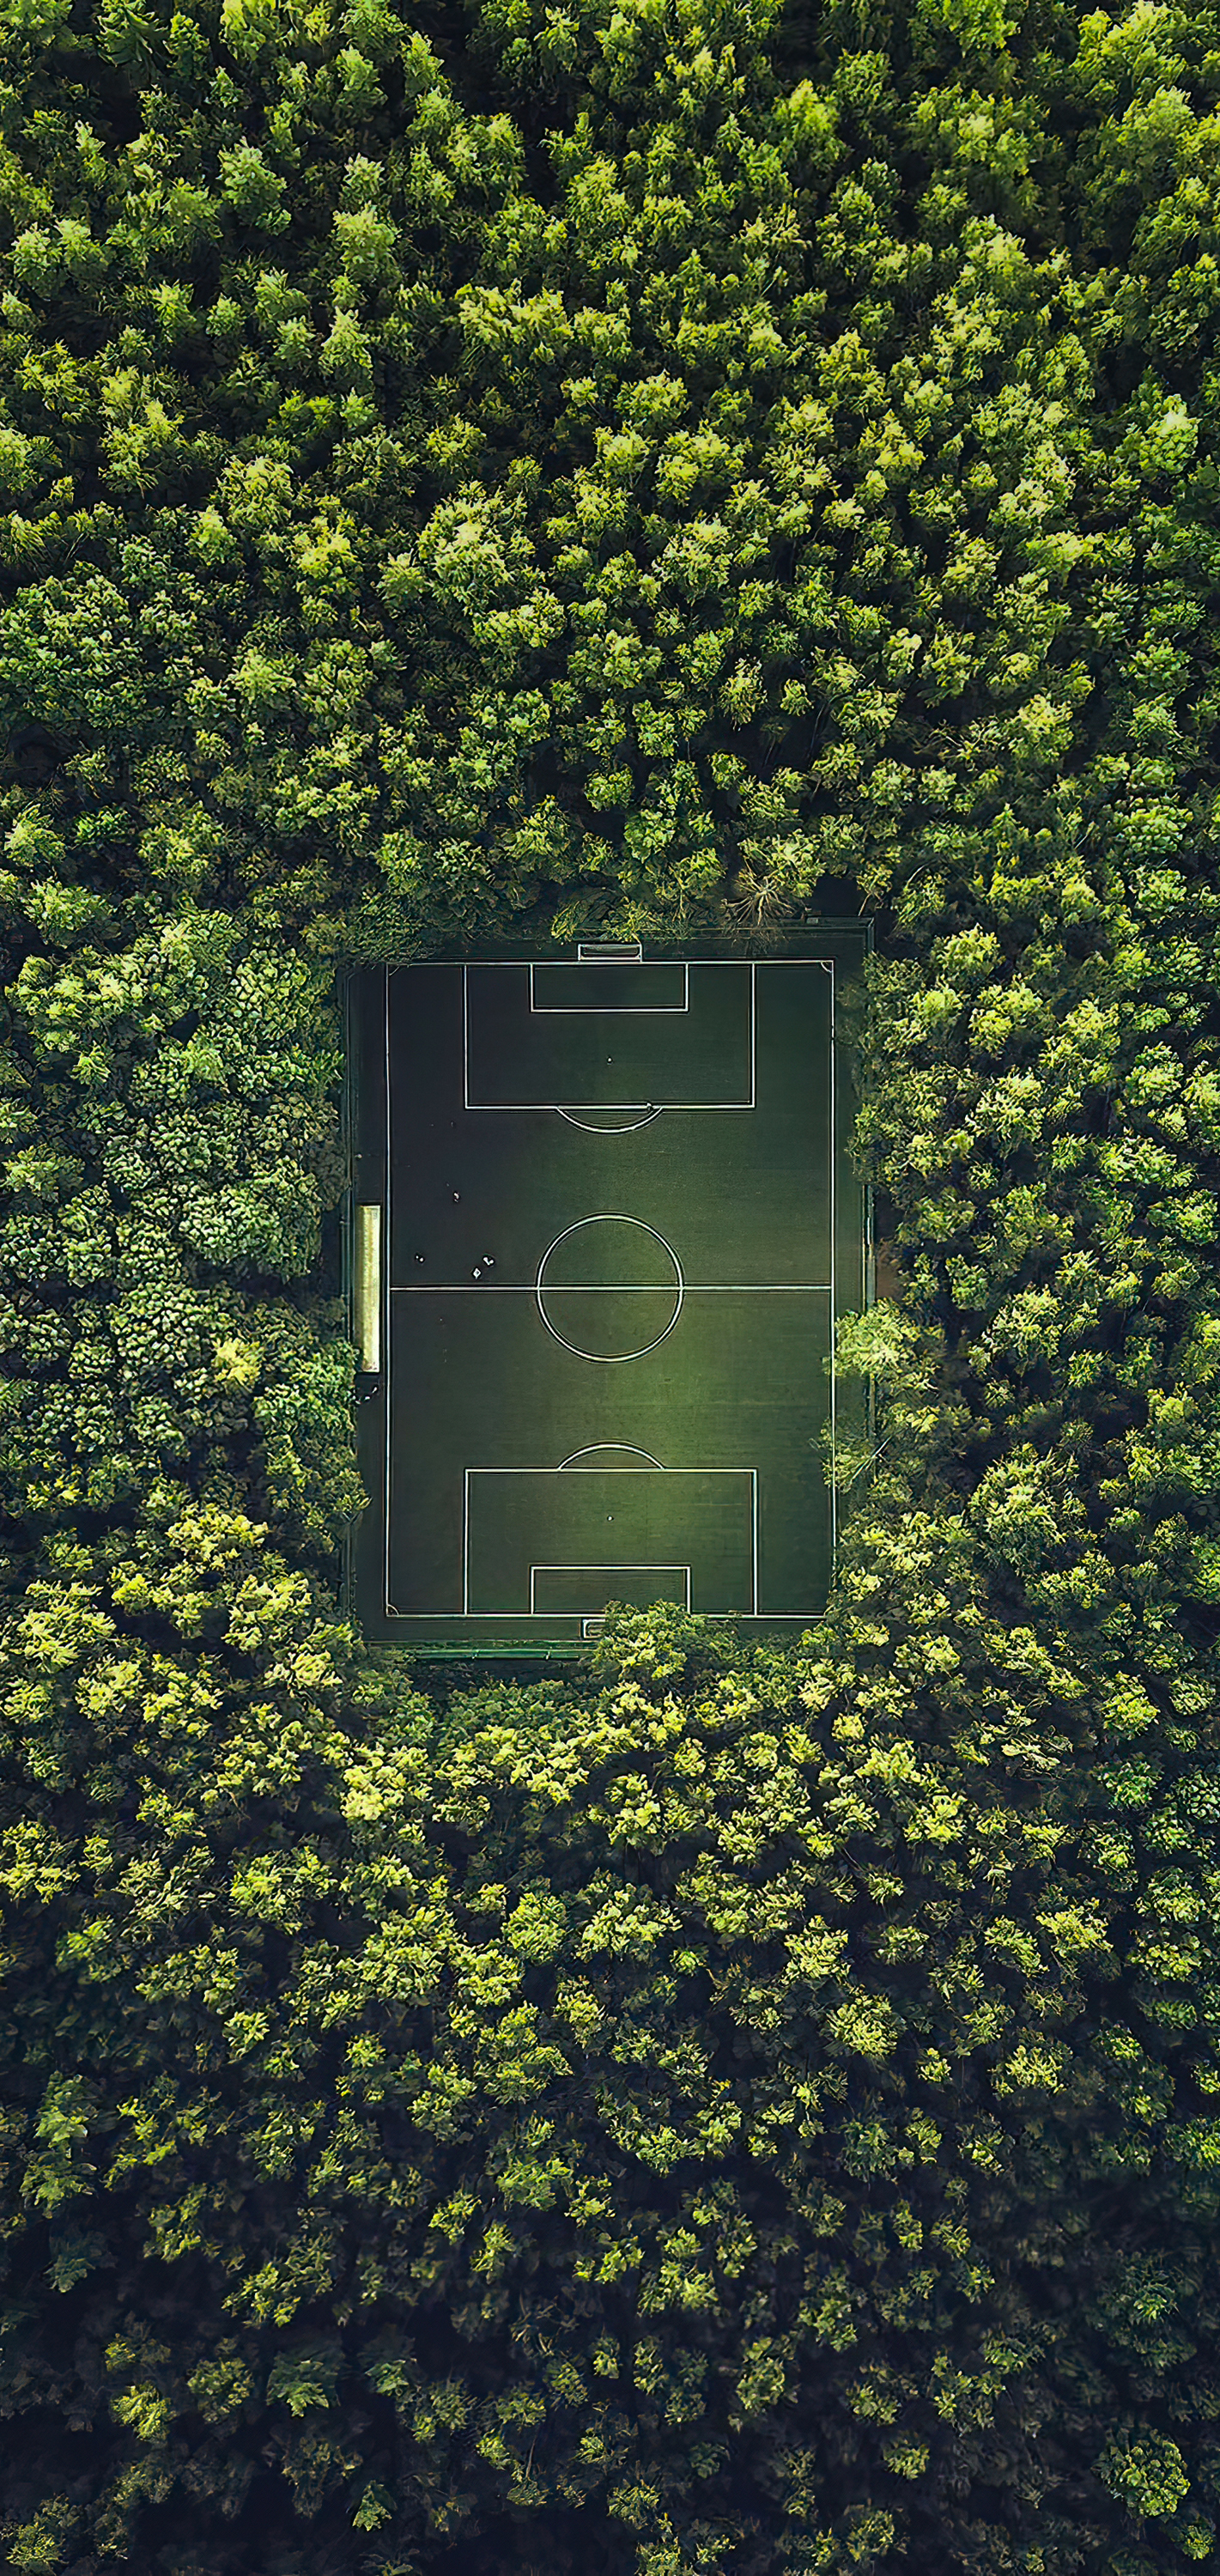 soccer grass wallpaper